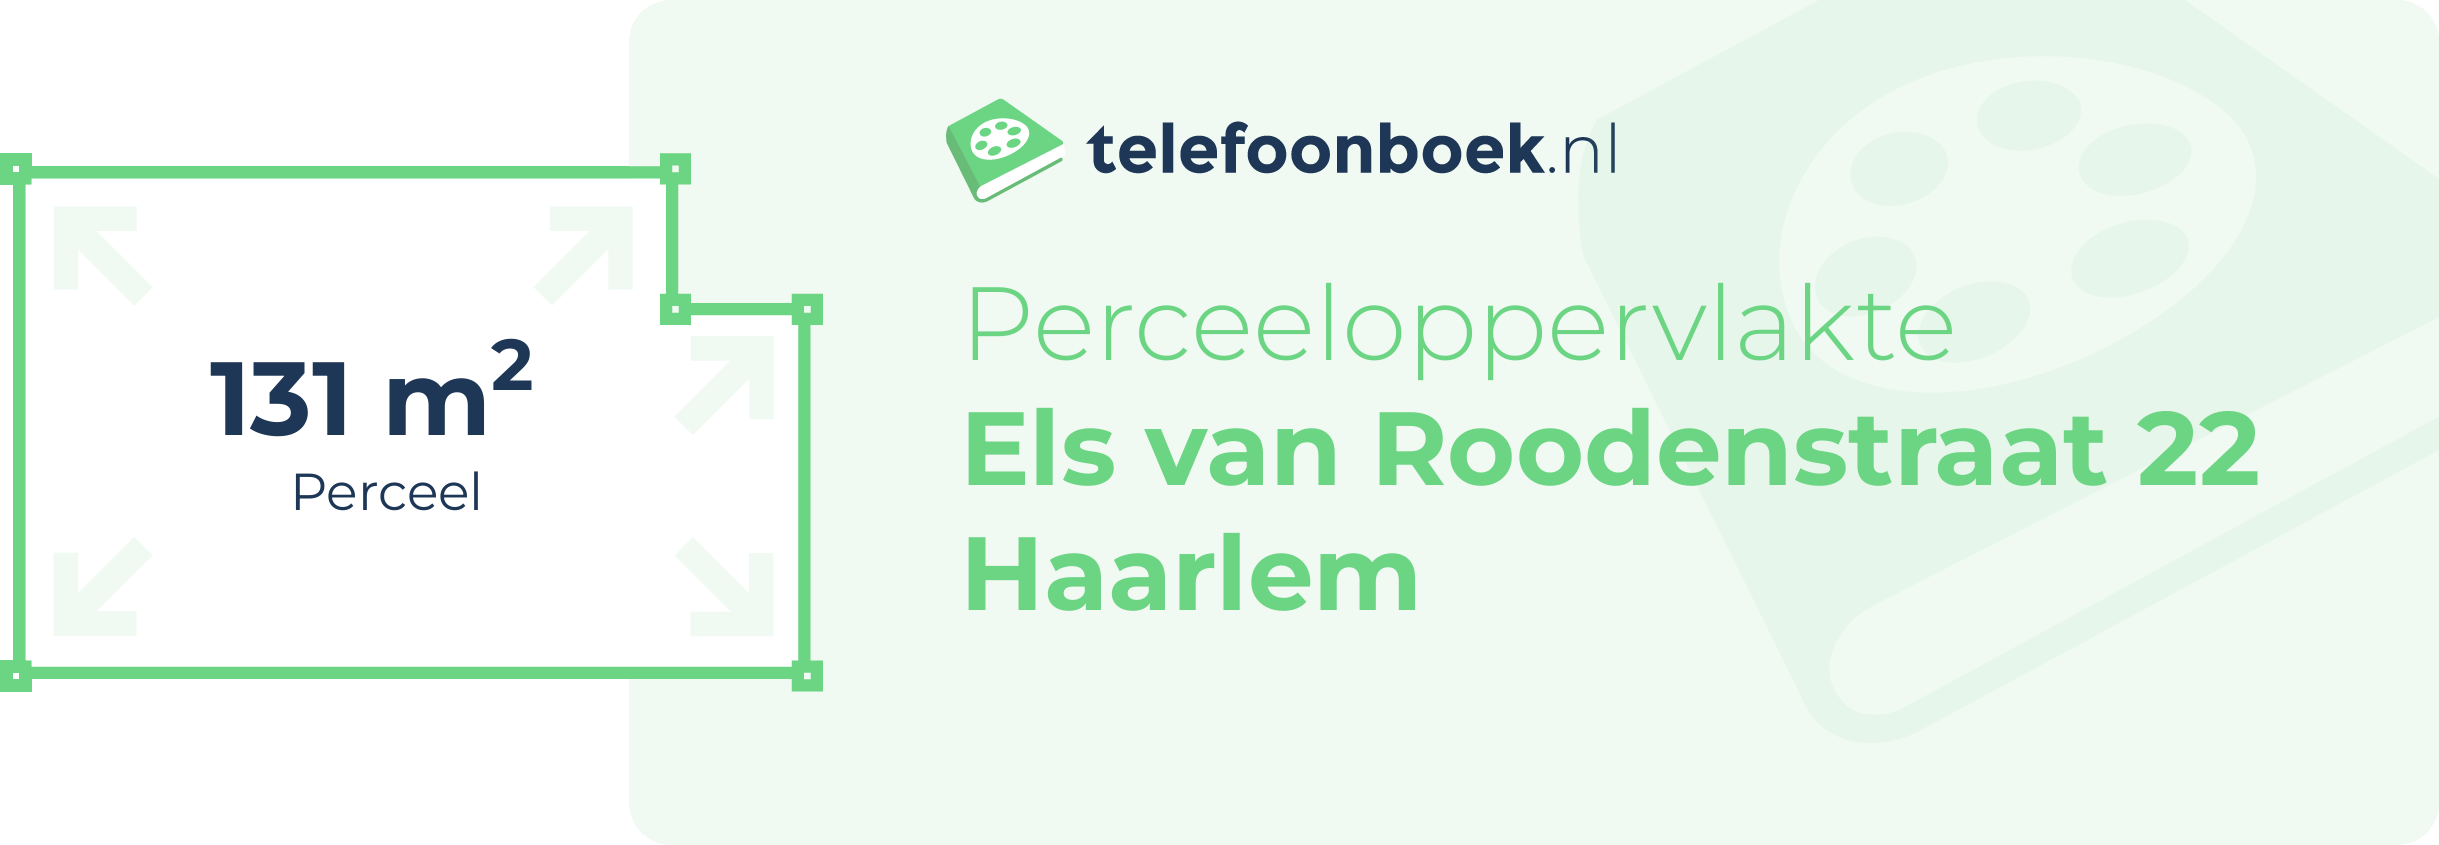 Perceeloppervlakte Els Van Roodenstraat 22 Haarlem